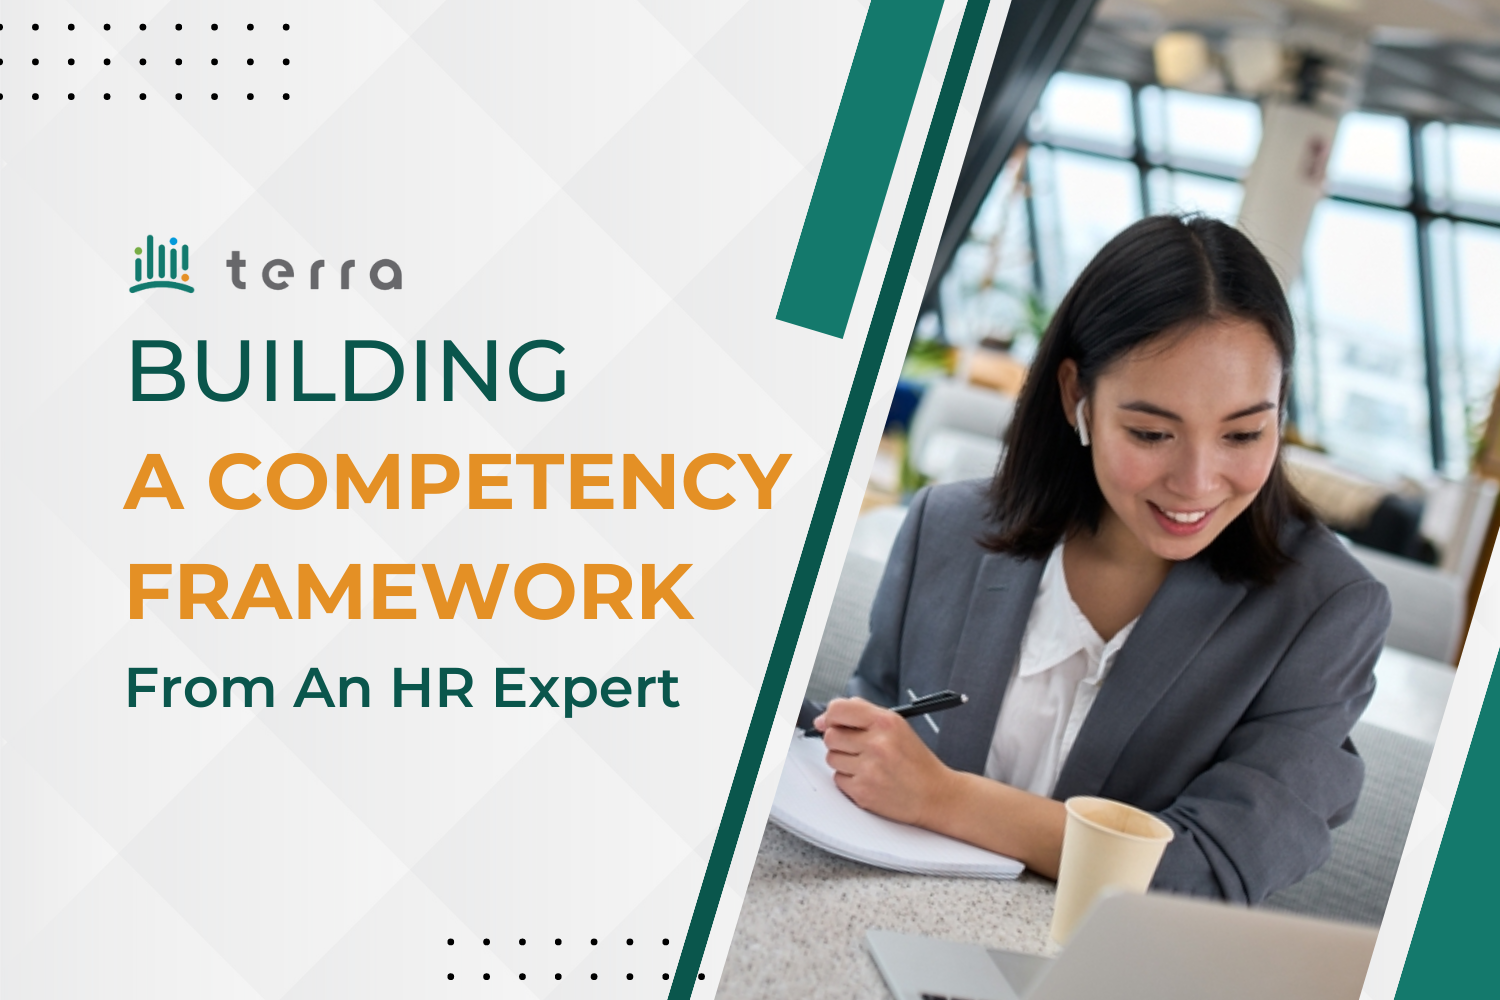 Building a competency framework from an HR expert